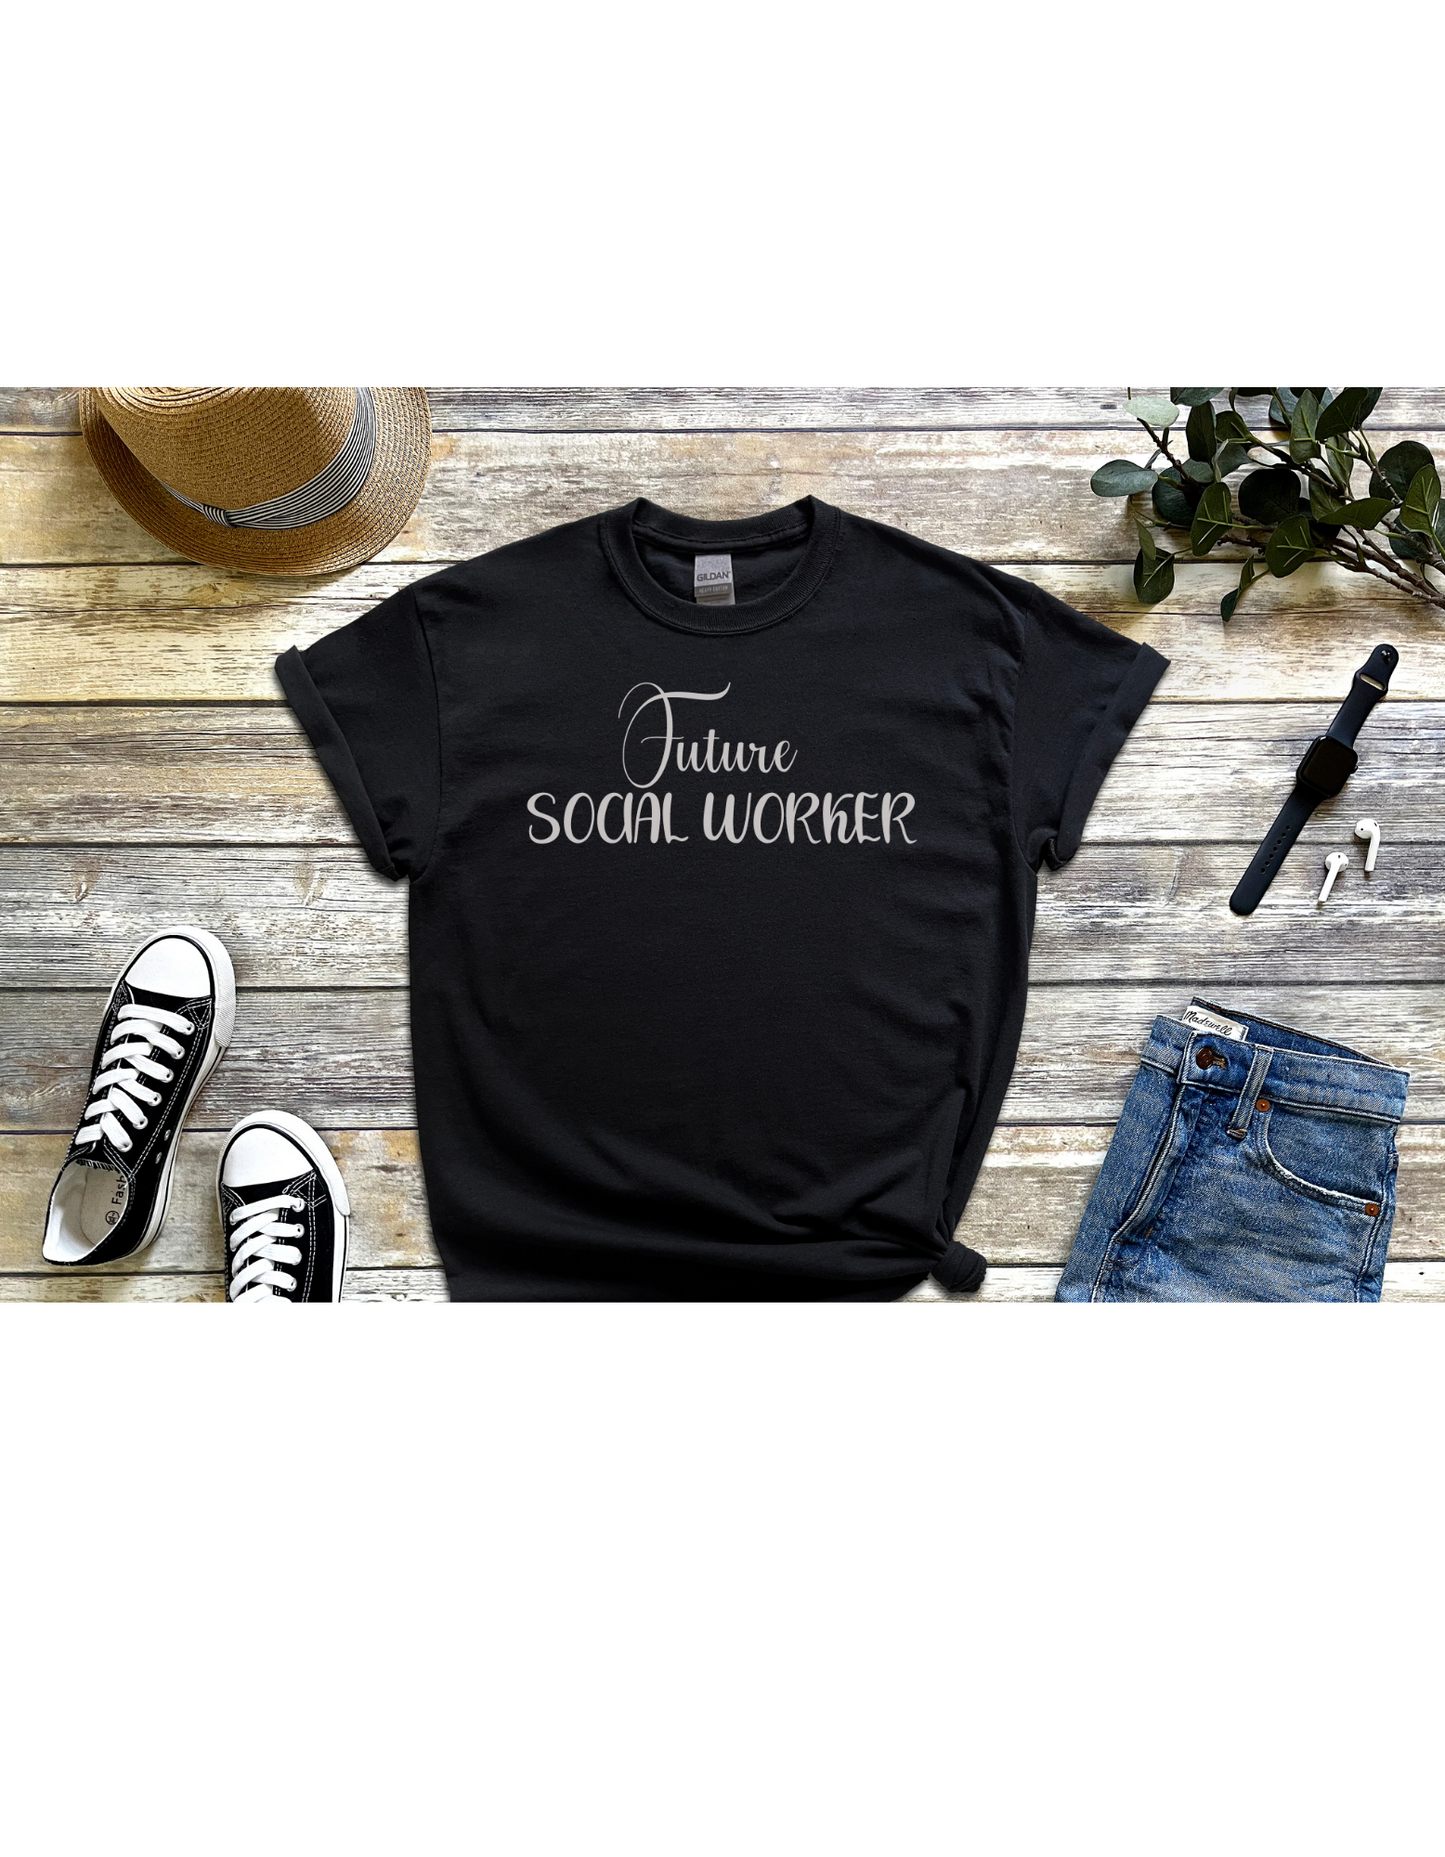 Future Social Worker T-Shirt, Social Work Shirt, Social Worker Tee